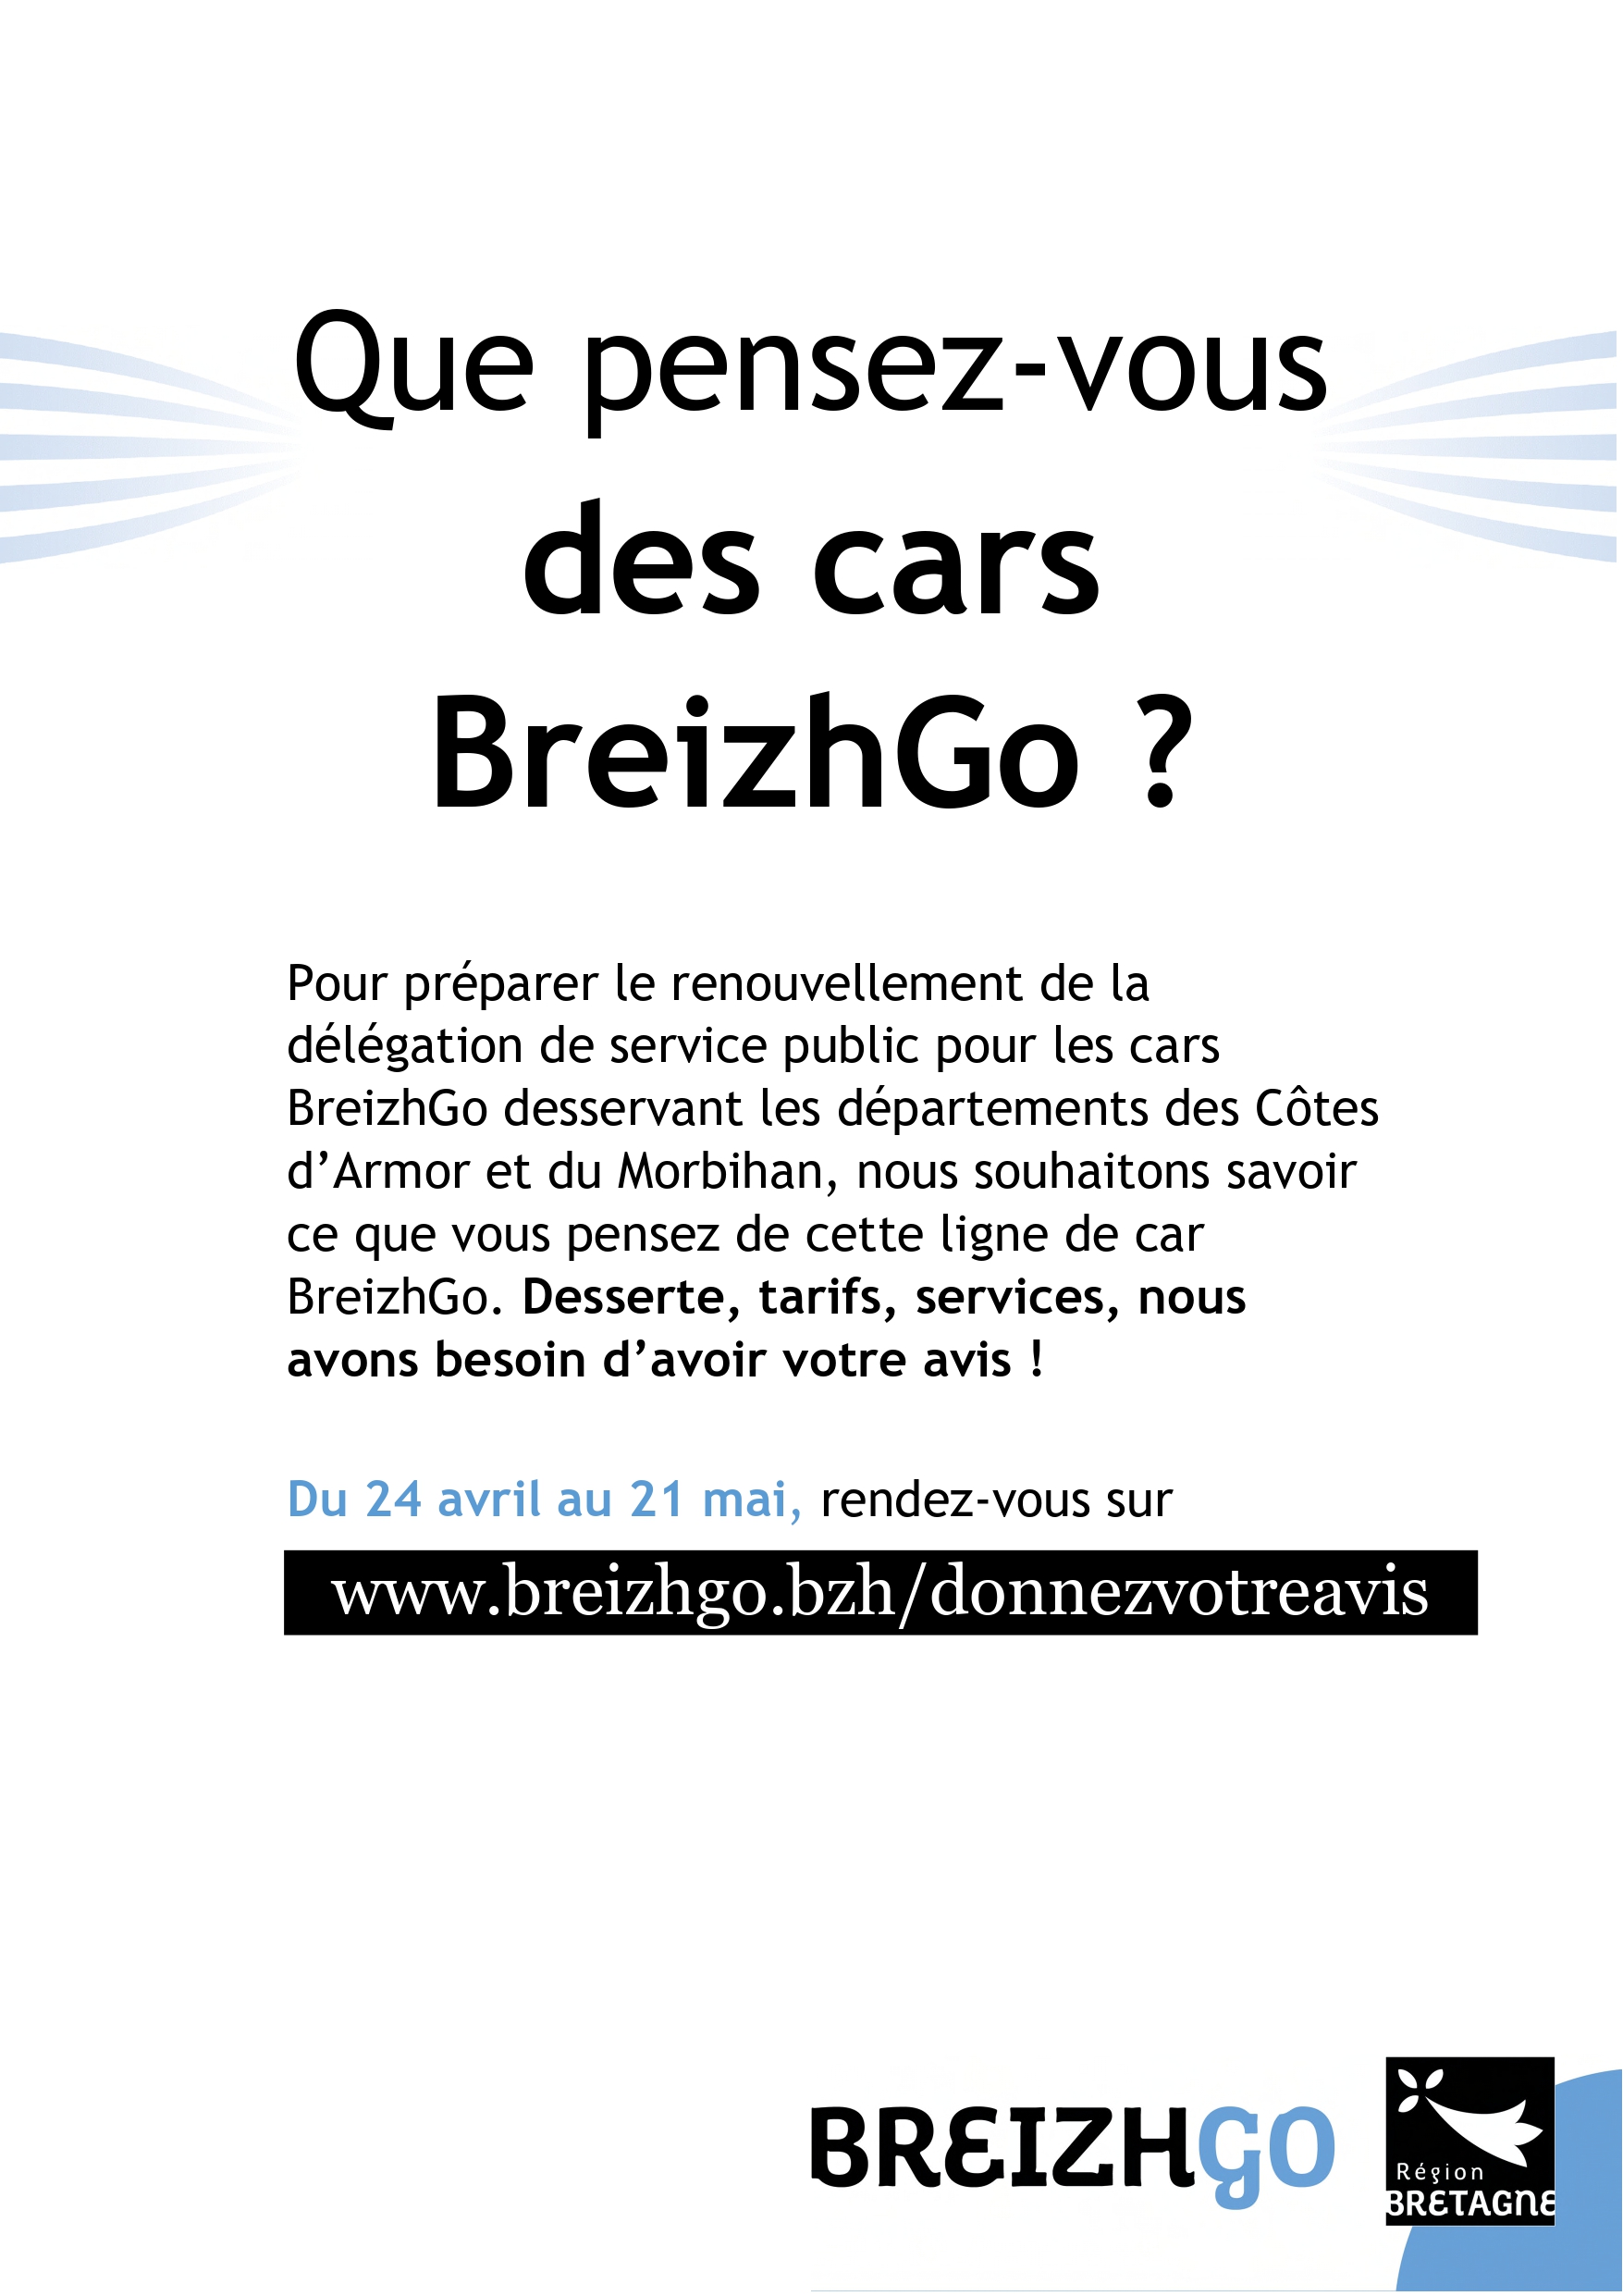 Grande consultation en ligne auprès des usagers et des non usagers du réseau des lignes de car BreizhGo desservant les départements du Morbihan et des Côtes d’Armor